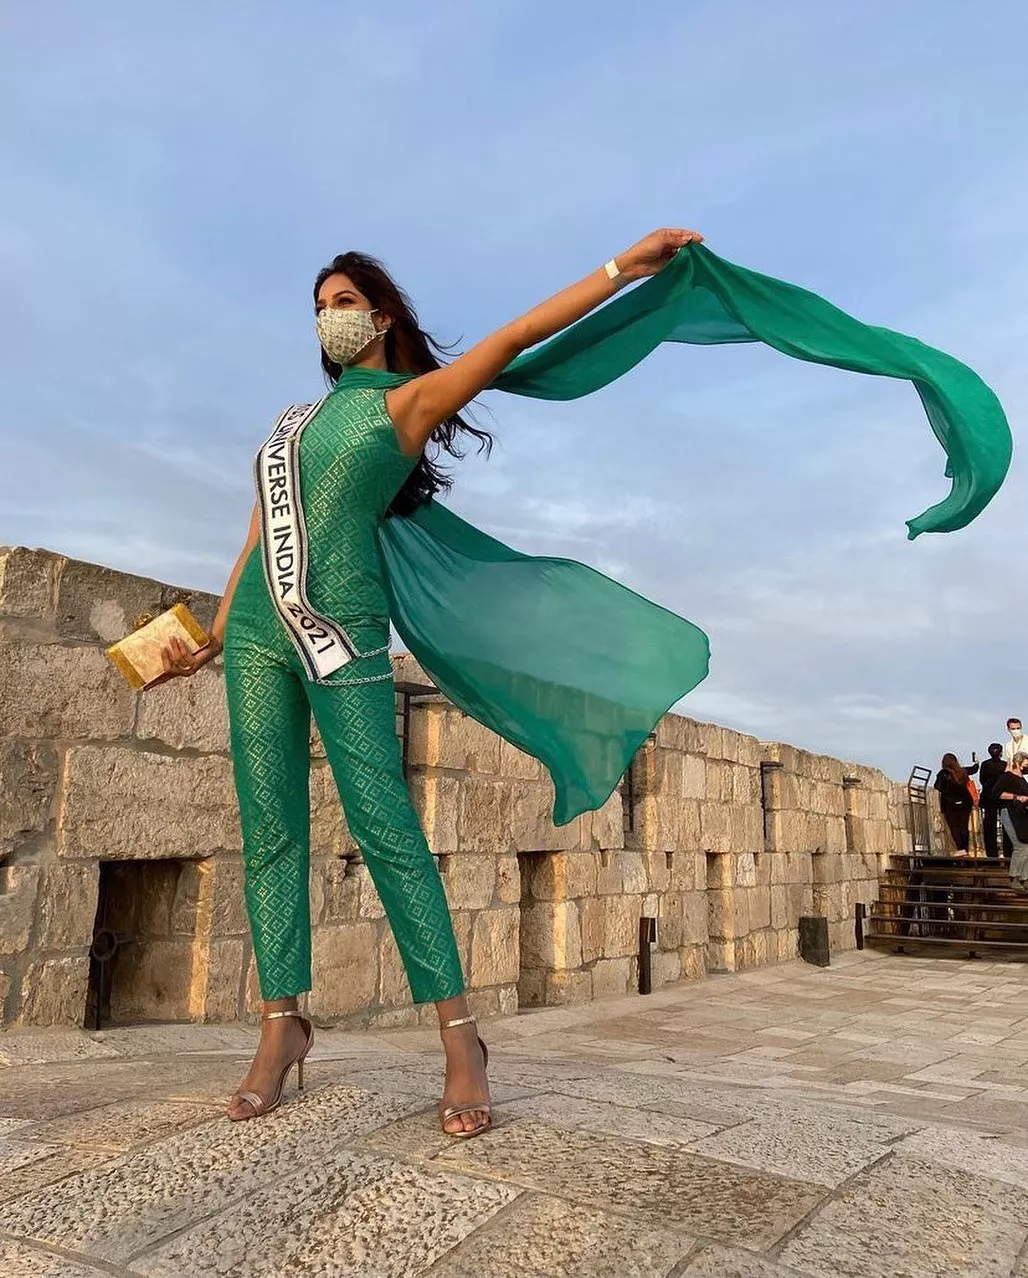 Міс Всесвіт 2021 – представниця Індії 21-річна Харнааз Сандху